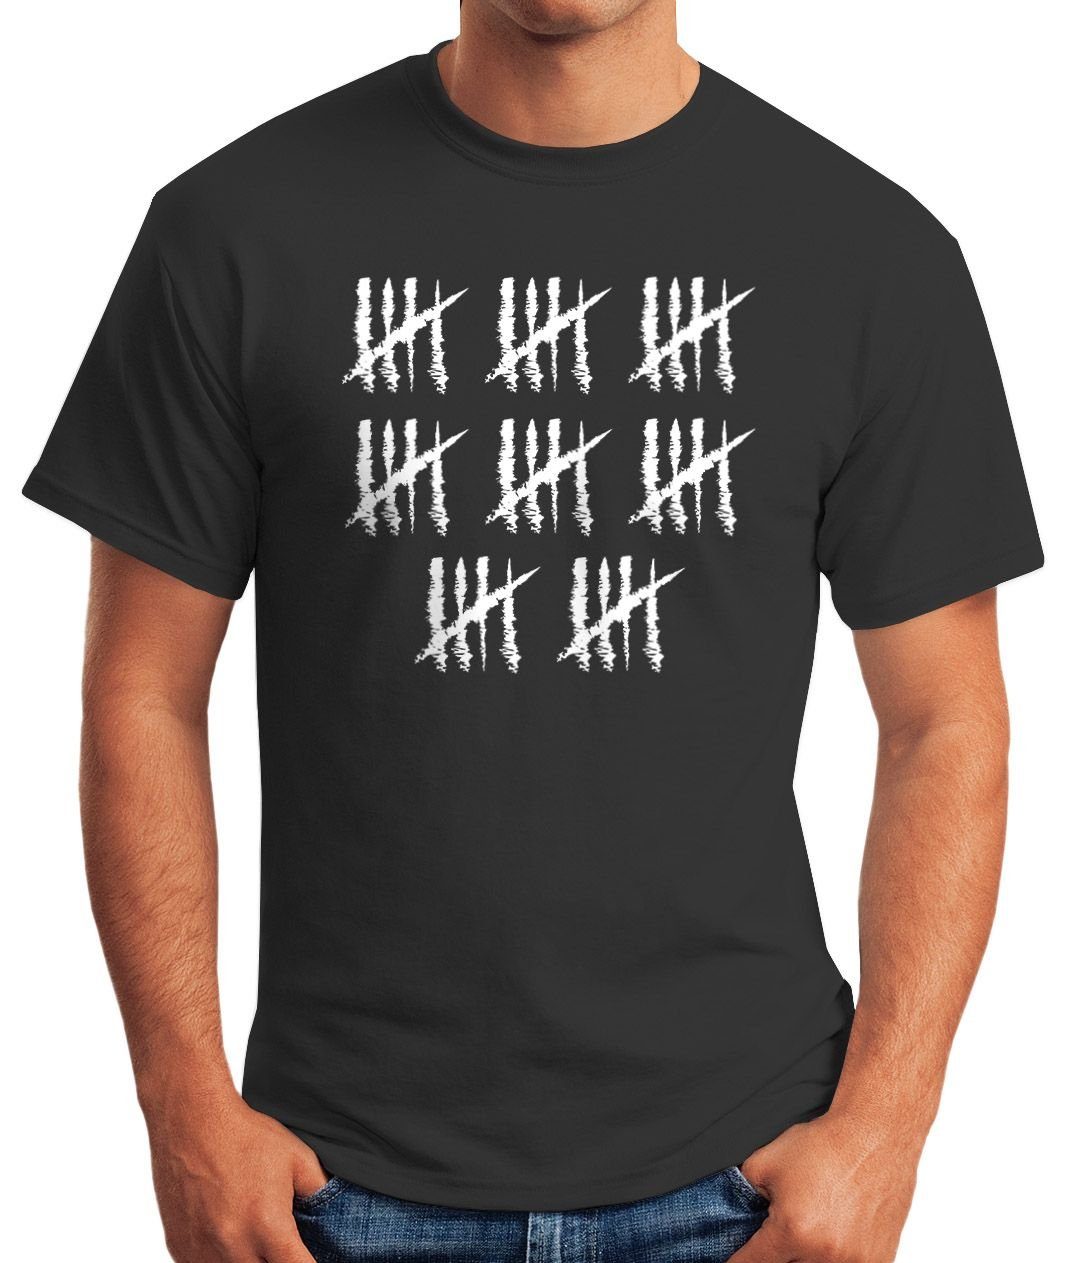 MoonWorks Print-Shirt Moonworks® Alter Object] T-Shirt mit Geburtstag Geschenk 40 Jahrgang Striche Fun-Shirt anthrazit Print Jubiläum Strichliste Herren [object